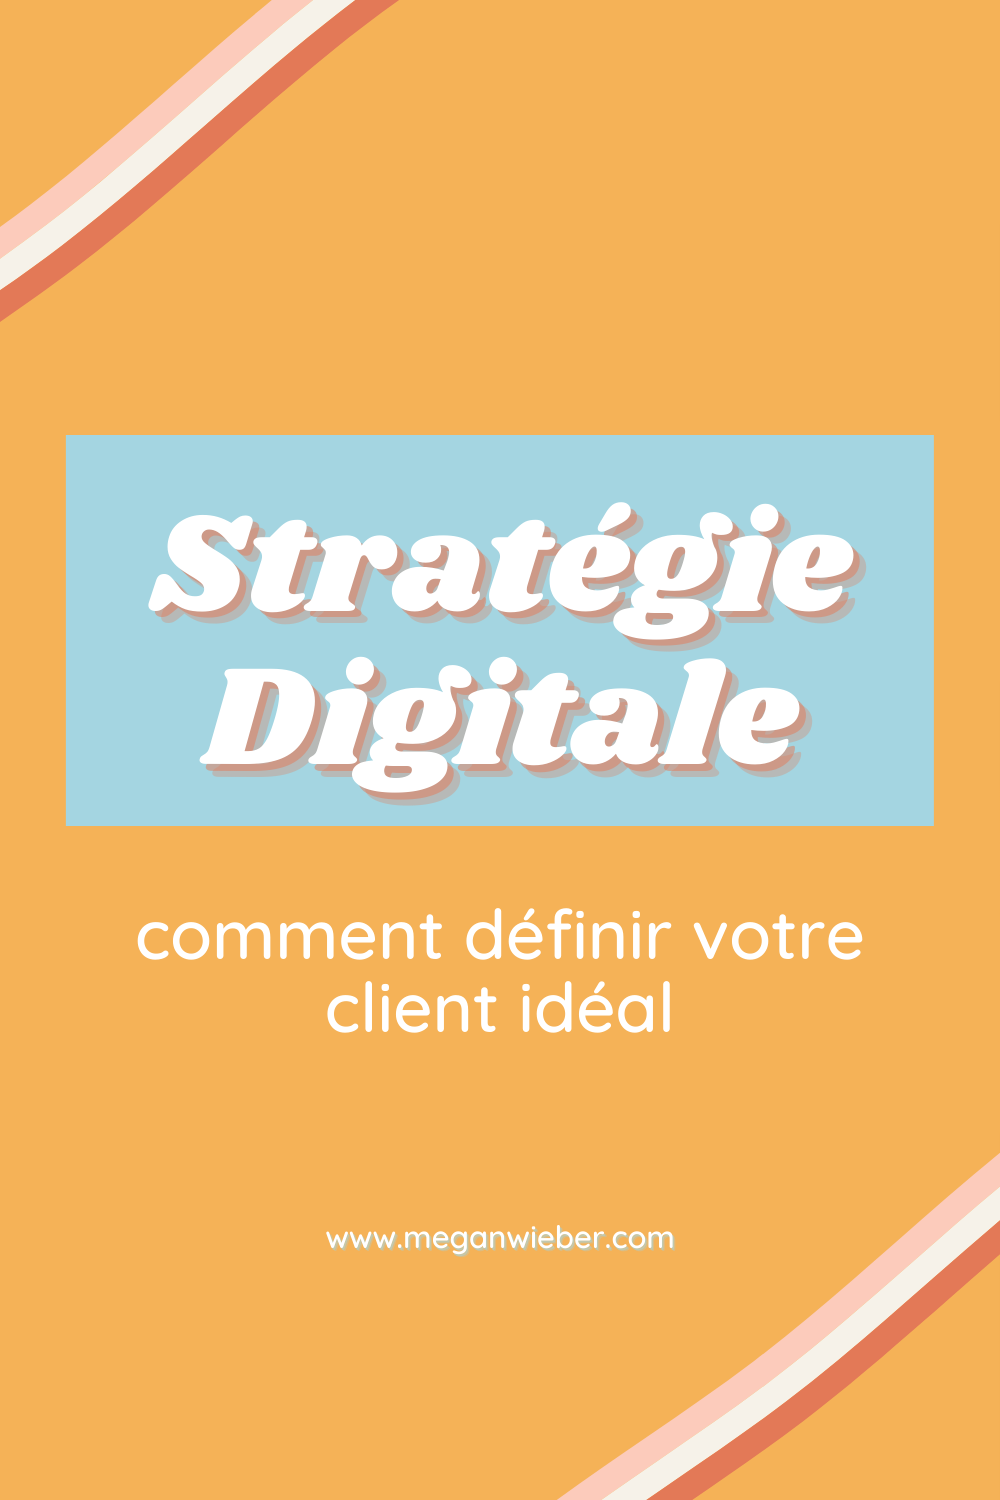 strategie-digitale-comment-definir-votre-client-ideal